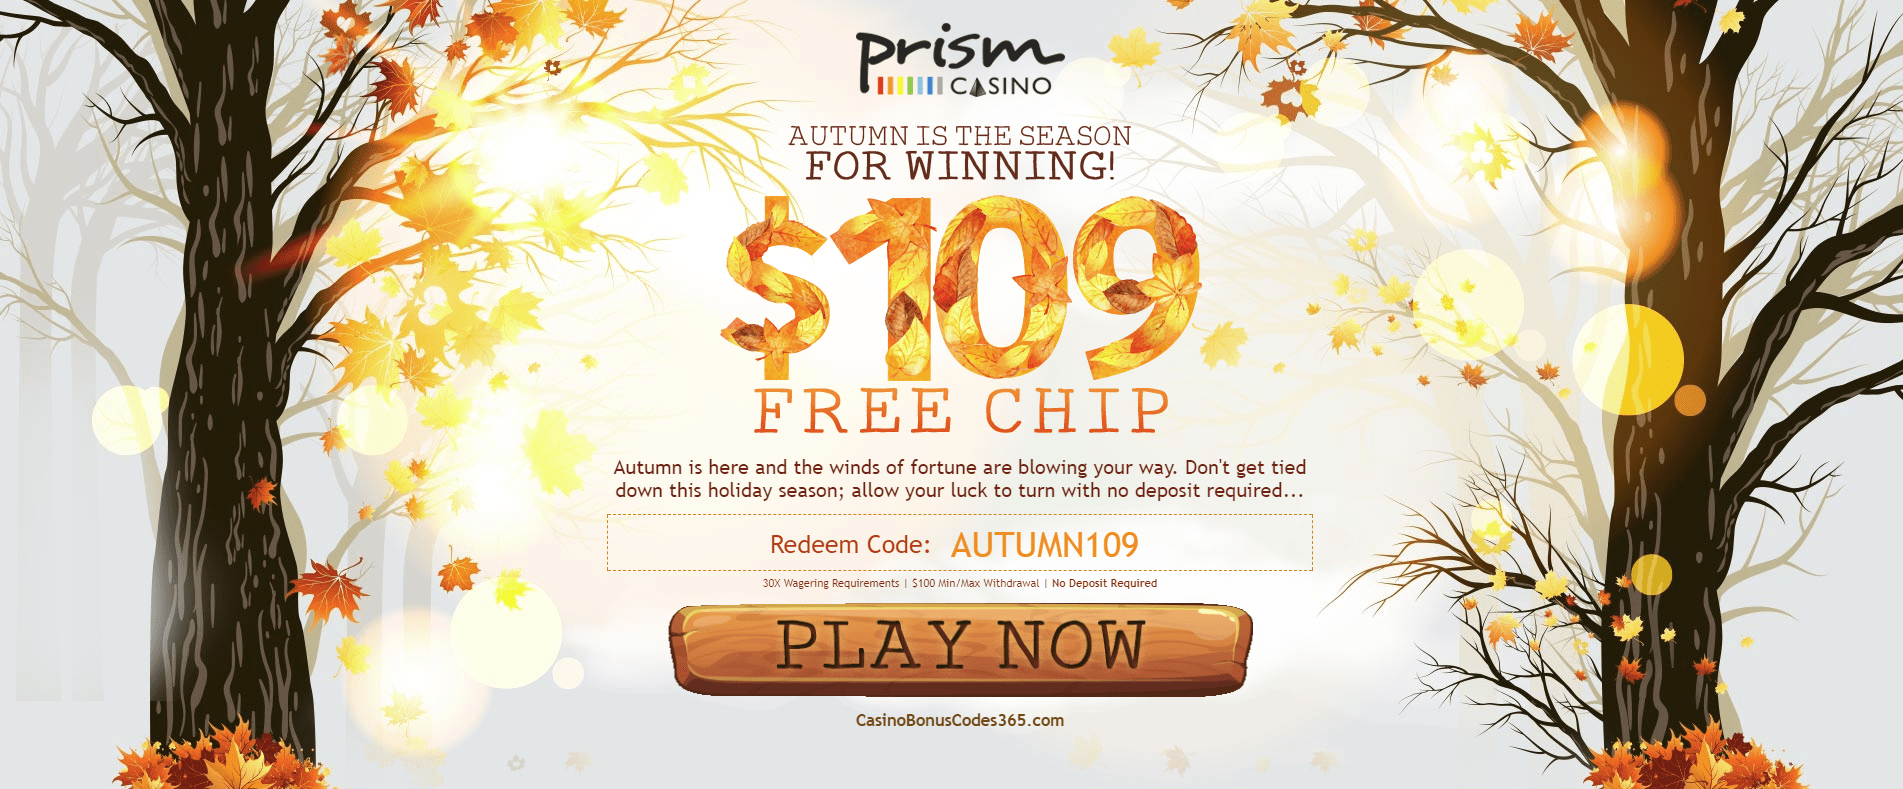 Prism casino no deposit bonus